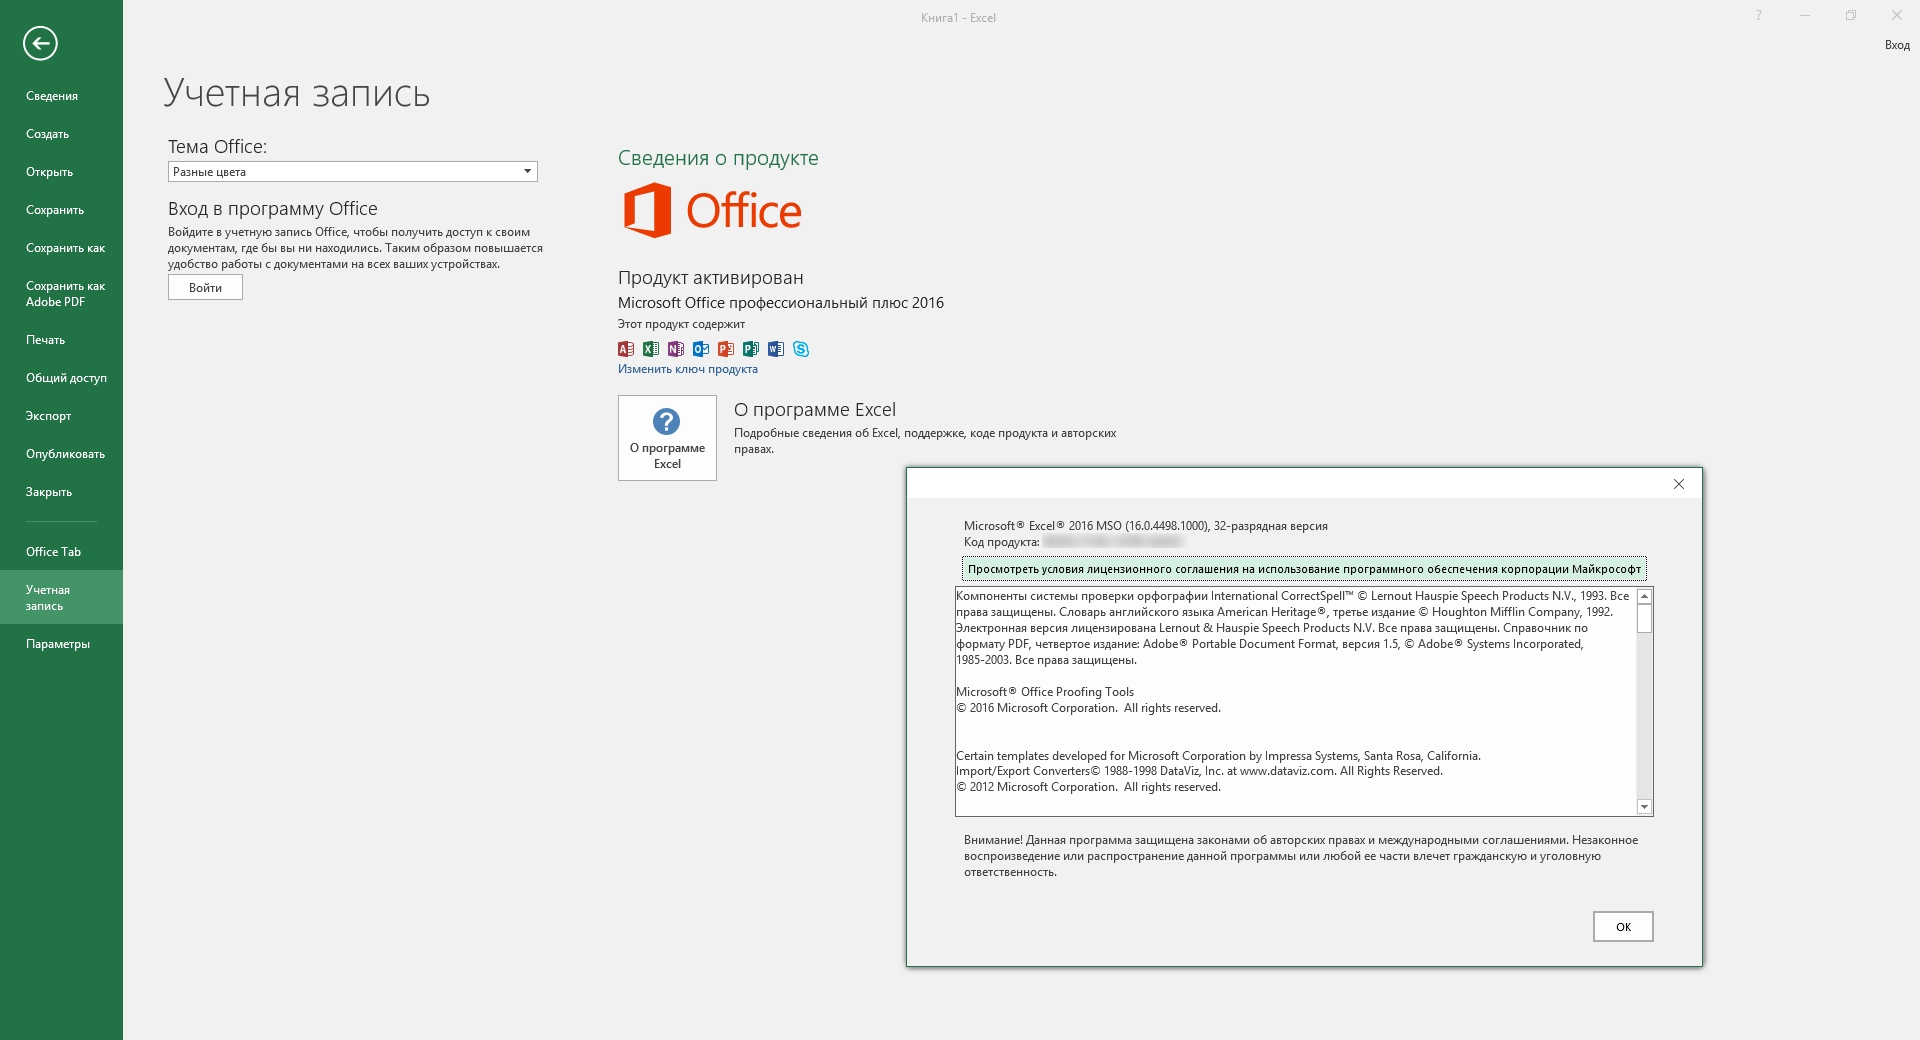 Ms office 2012 free download utorrent software torrent windows 7 64 bit